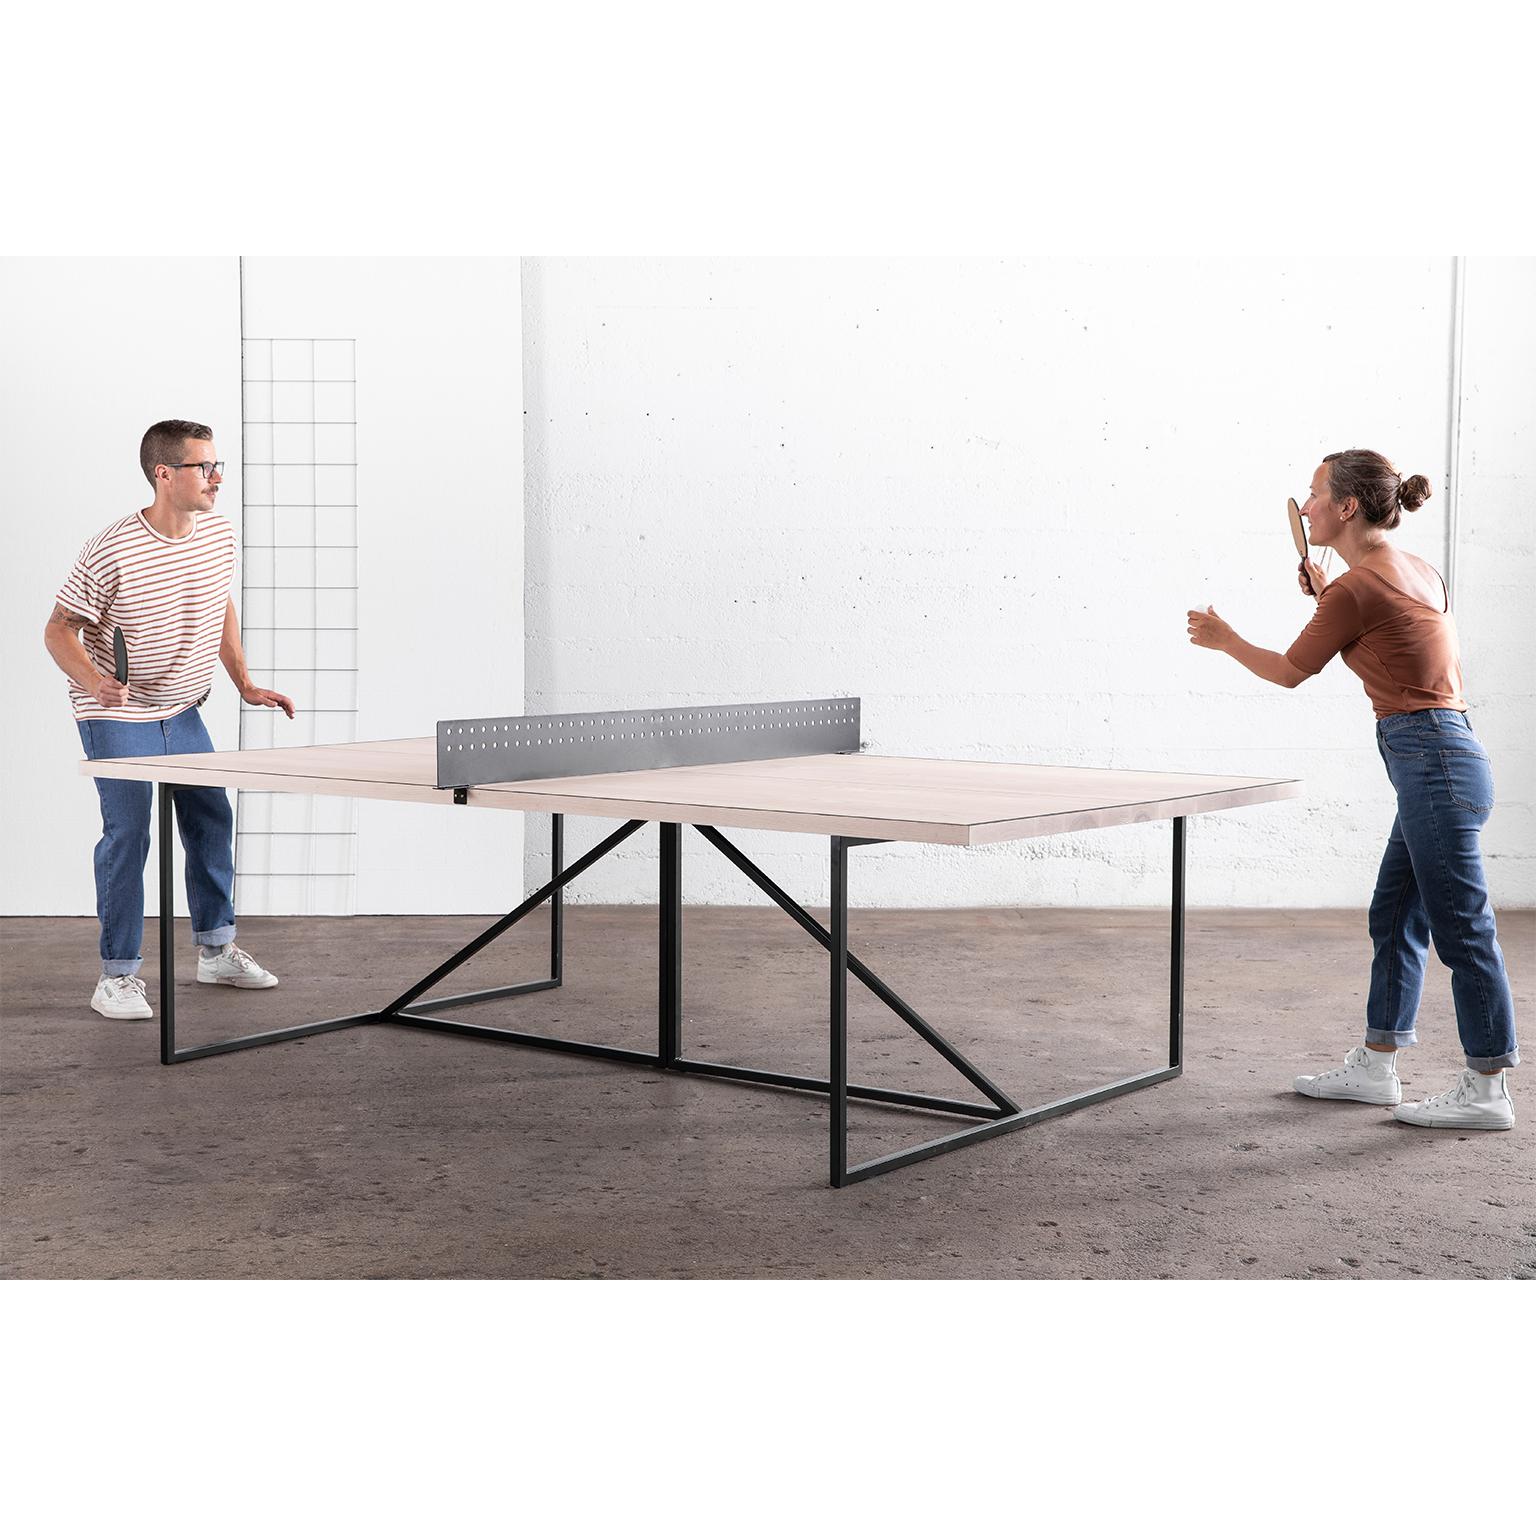 Der Break Ping Pong Table verleiht dem klassischen Gesellschaftsspiel einen modernen Look. Auf der matten Holzoberfläche des Tisches werden Sie wie ein Profi spielen. Das Gestell des Tisches ist aus langlebigem Stahl handgeschweißt und kann in einer